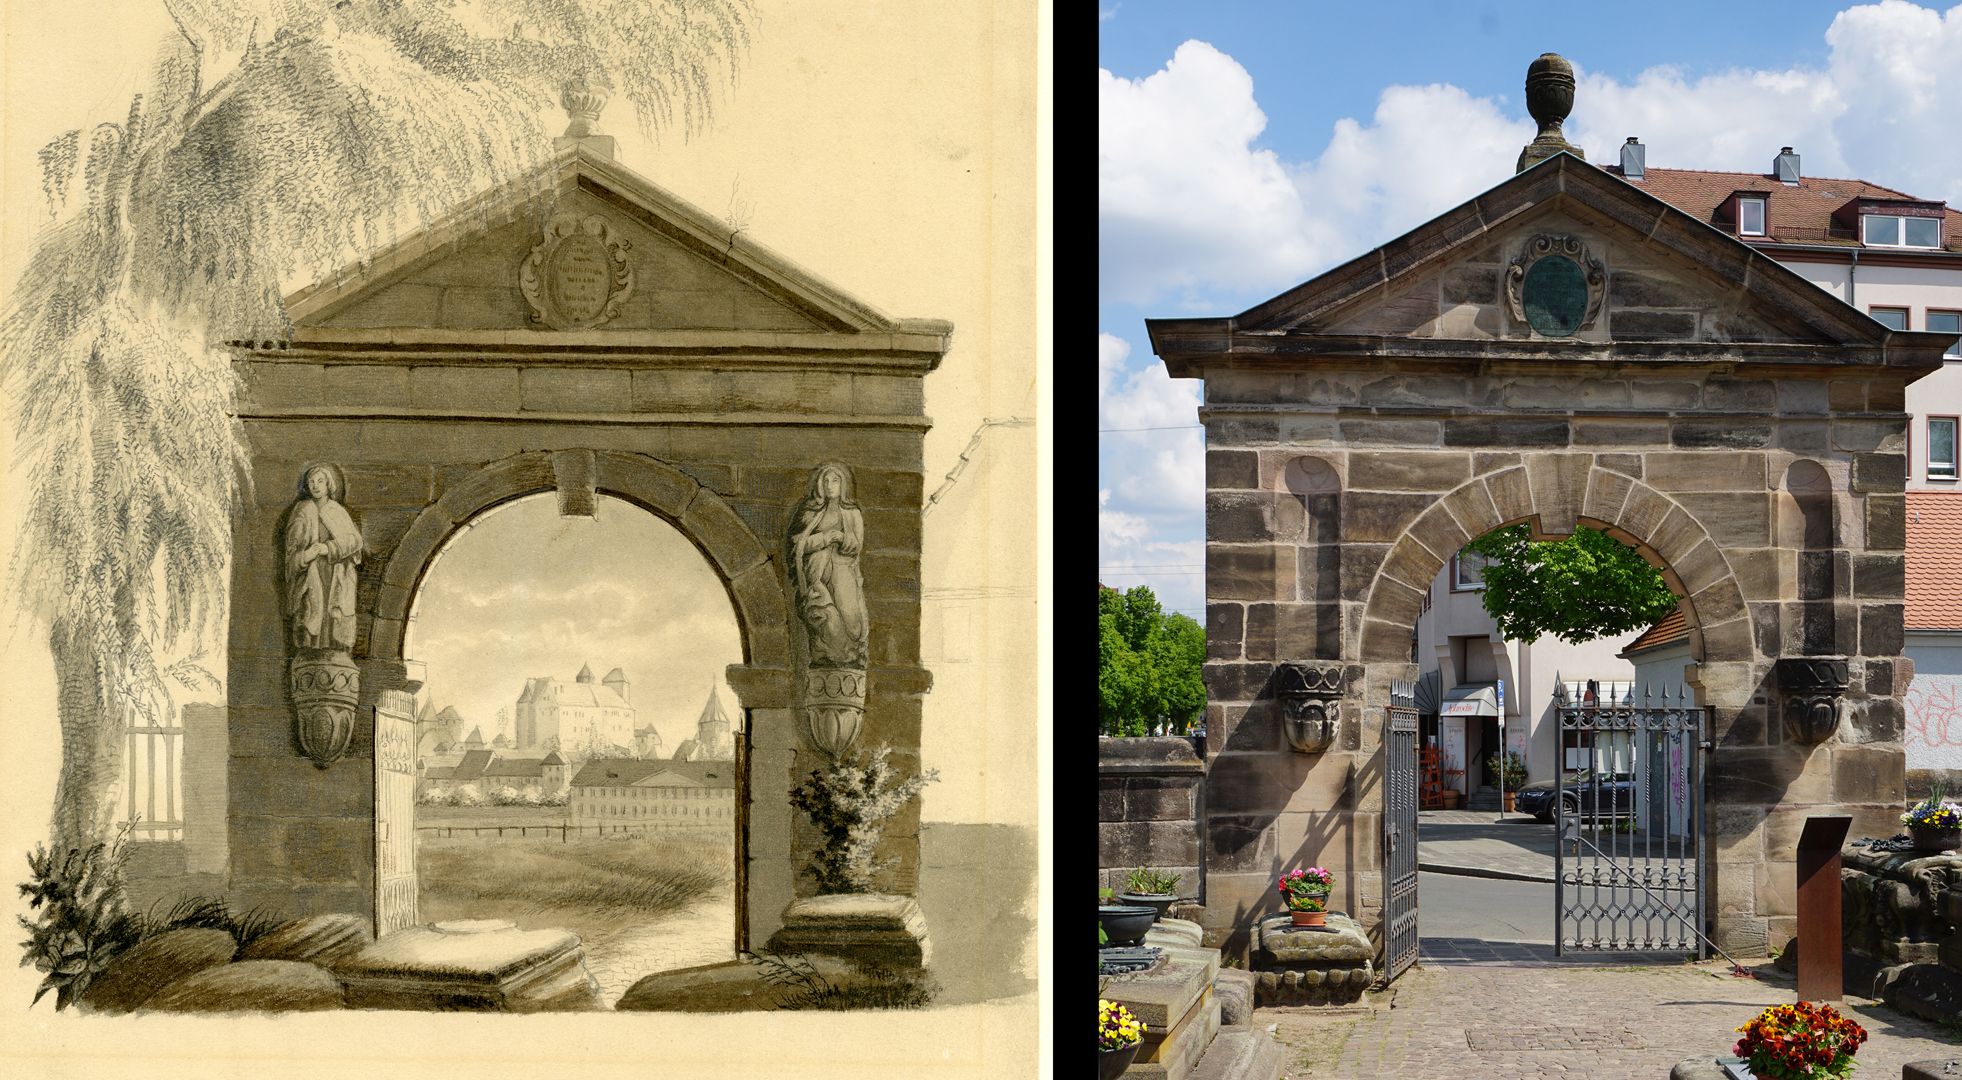 Eingangsportal am Johannisfriedhof Vergleichsbild mit heutigem Zustand